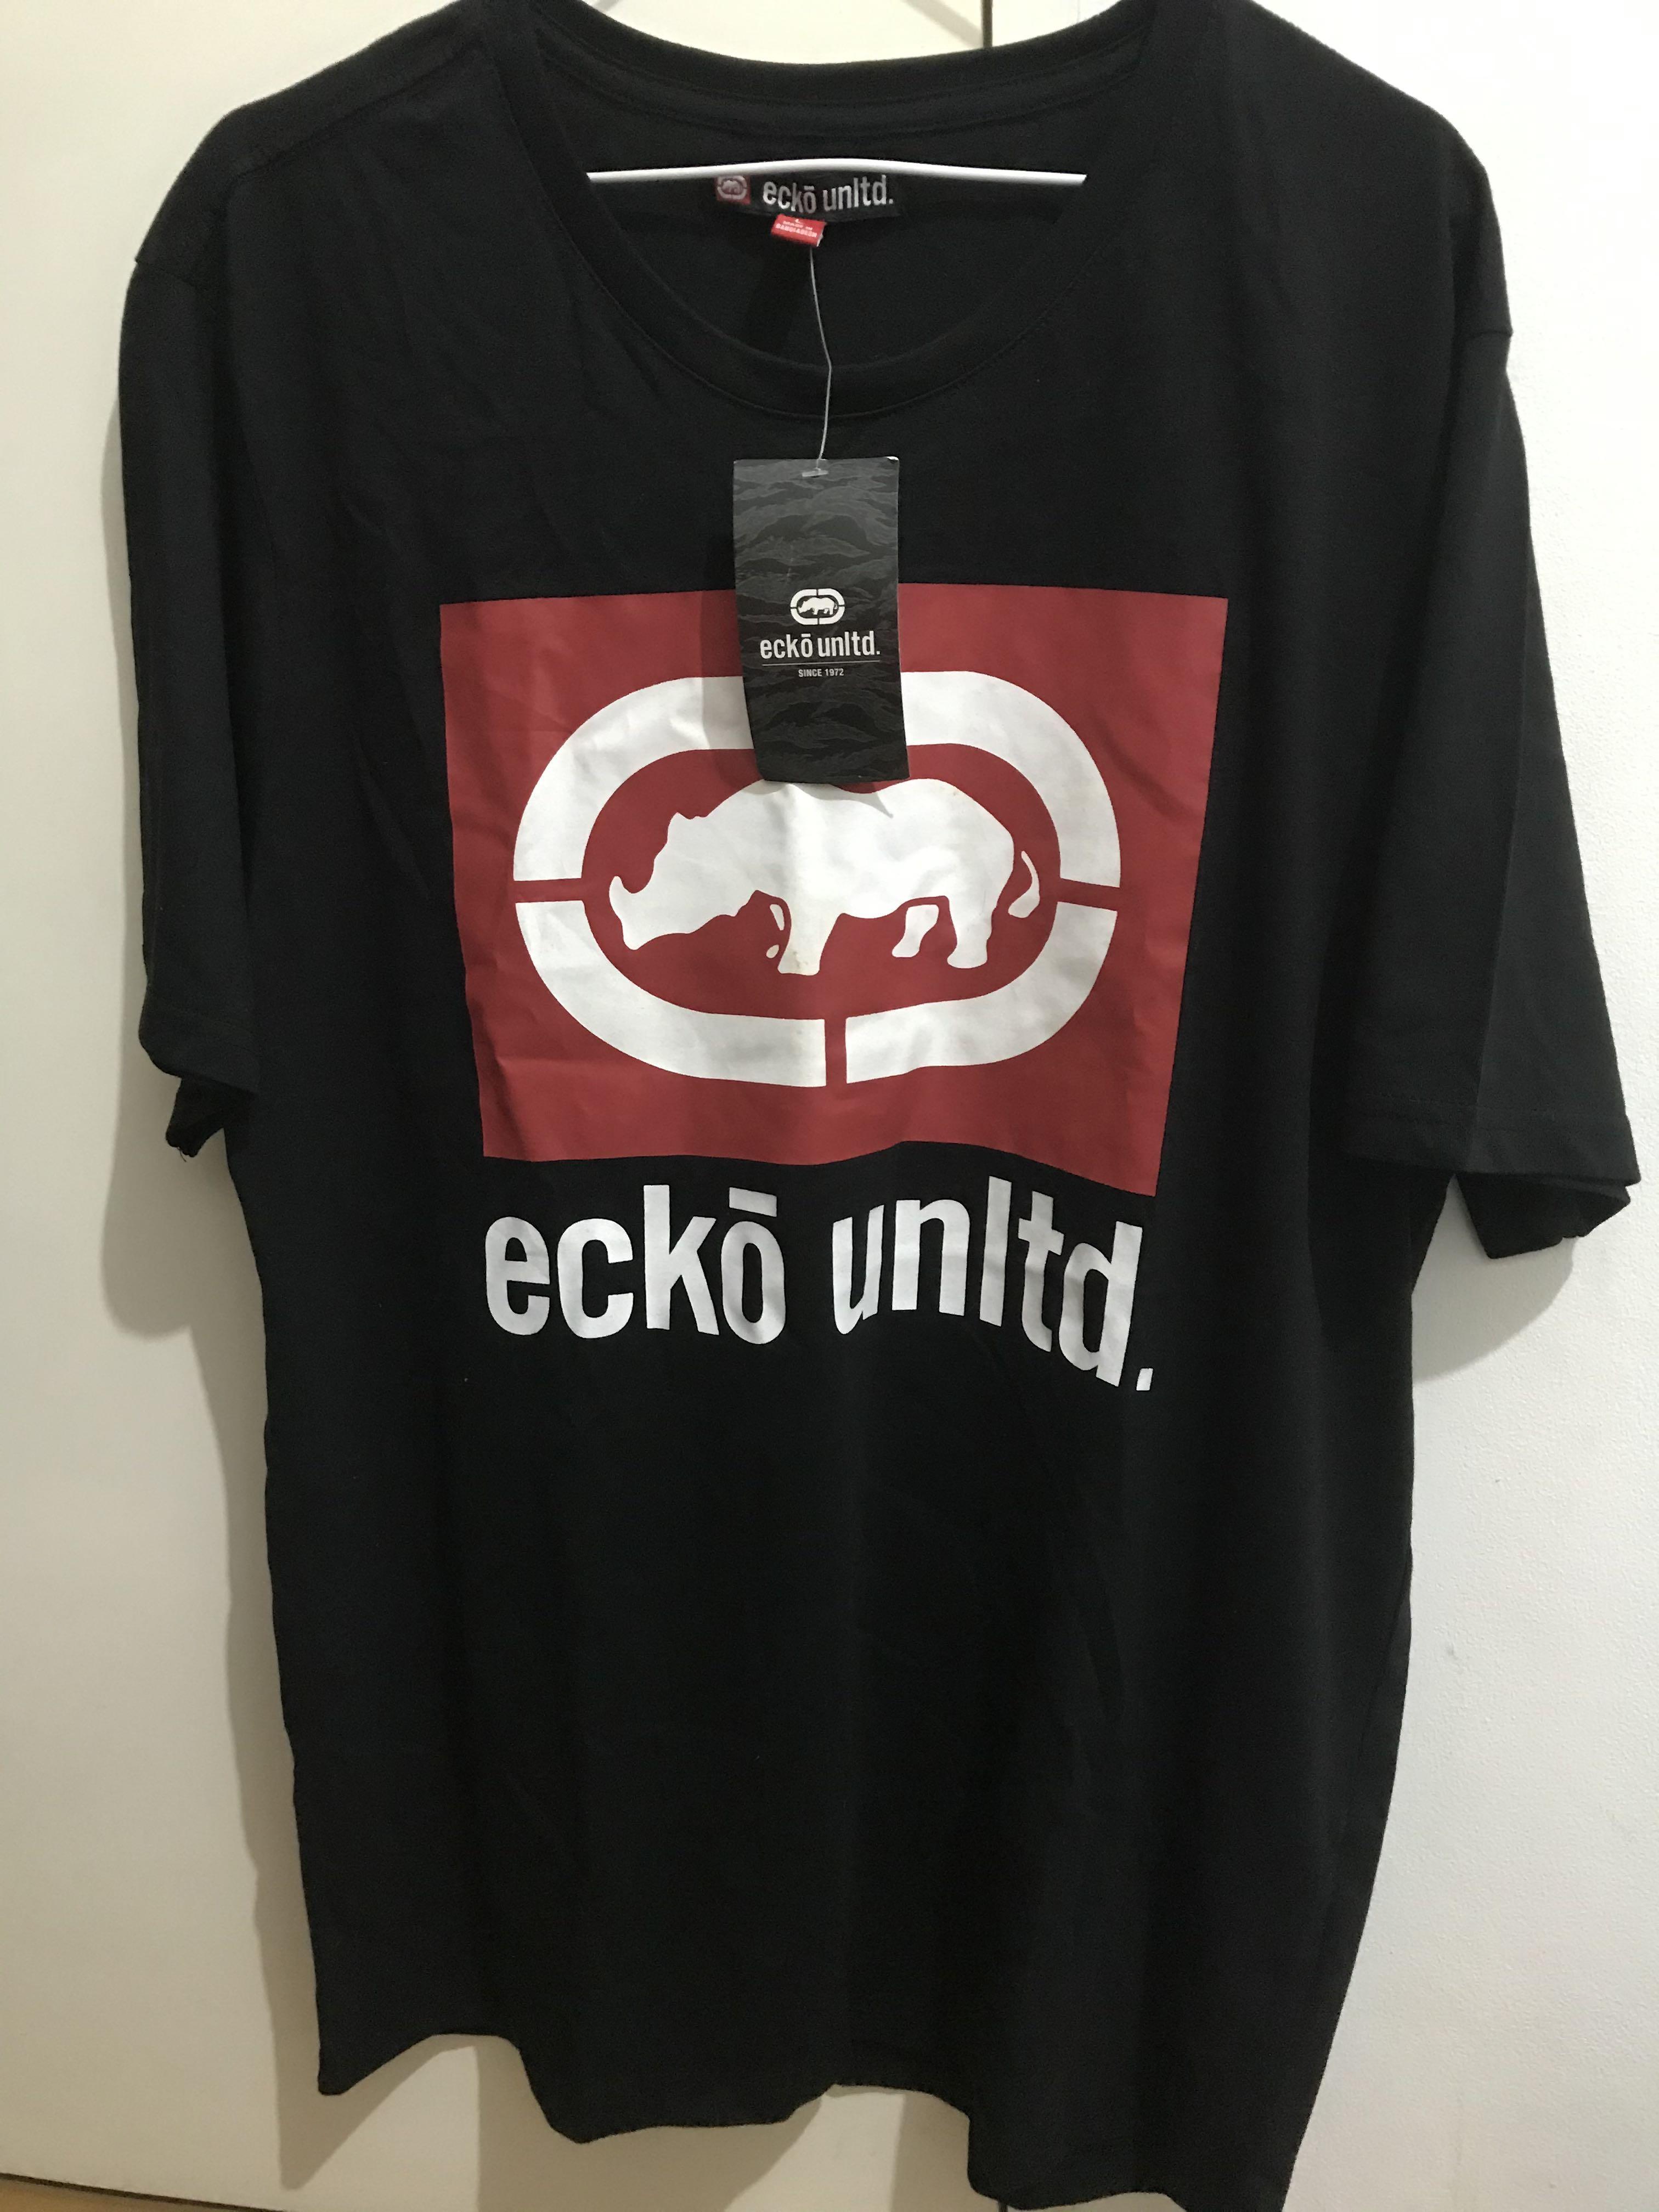 Ecko Unltd. Shirt - brand new, Men's Fashion, Tops & Sets, Tshirts ...